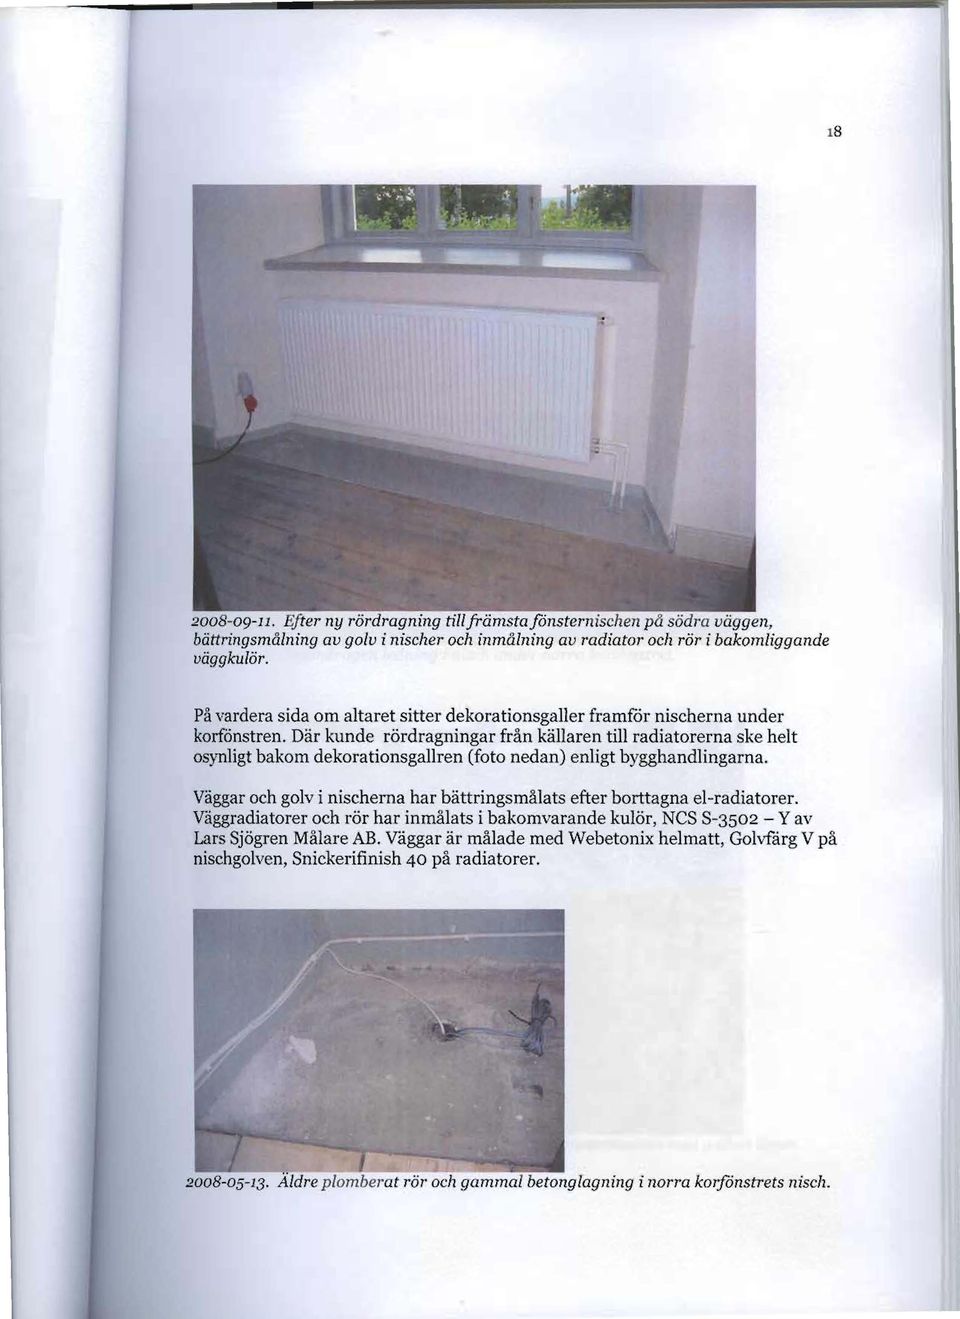 Där kunde rördragningar från källaren till radiatorerna ske helt osynligt bakom dekorationsgallren (foto nedan) enligt bygghandlingarna.